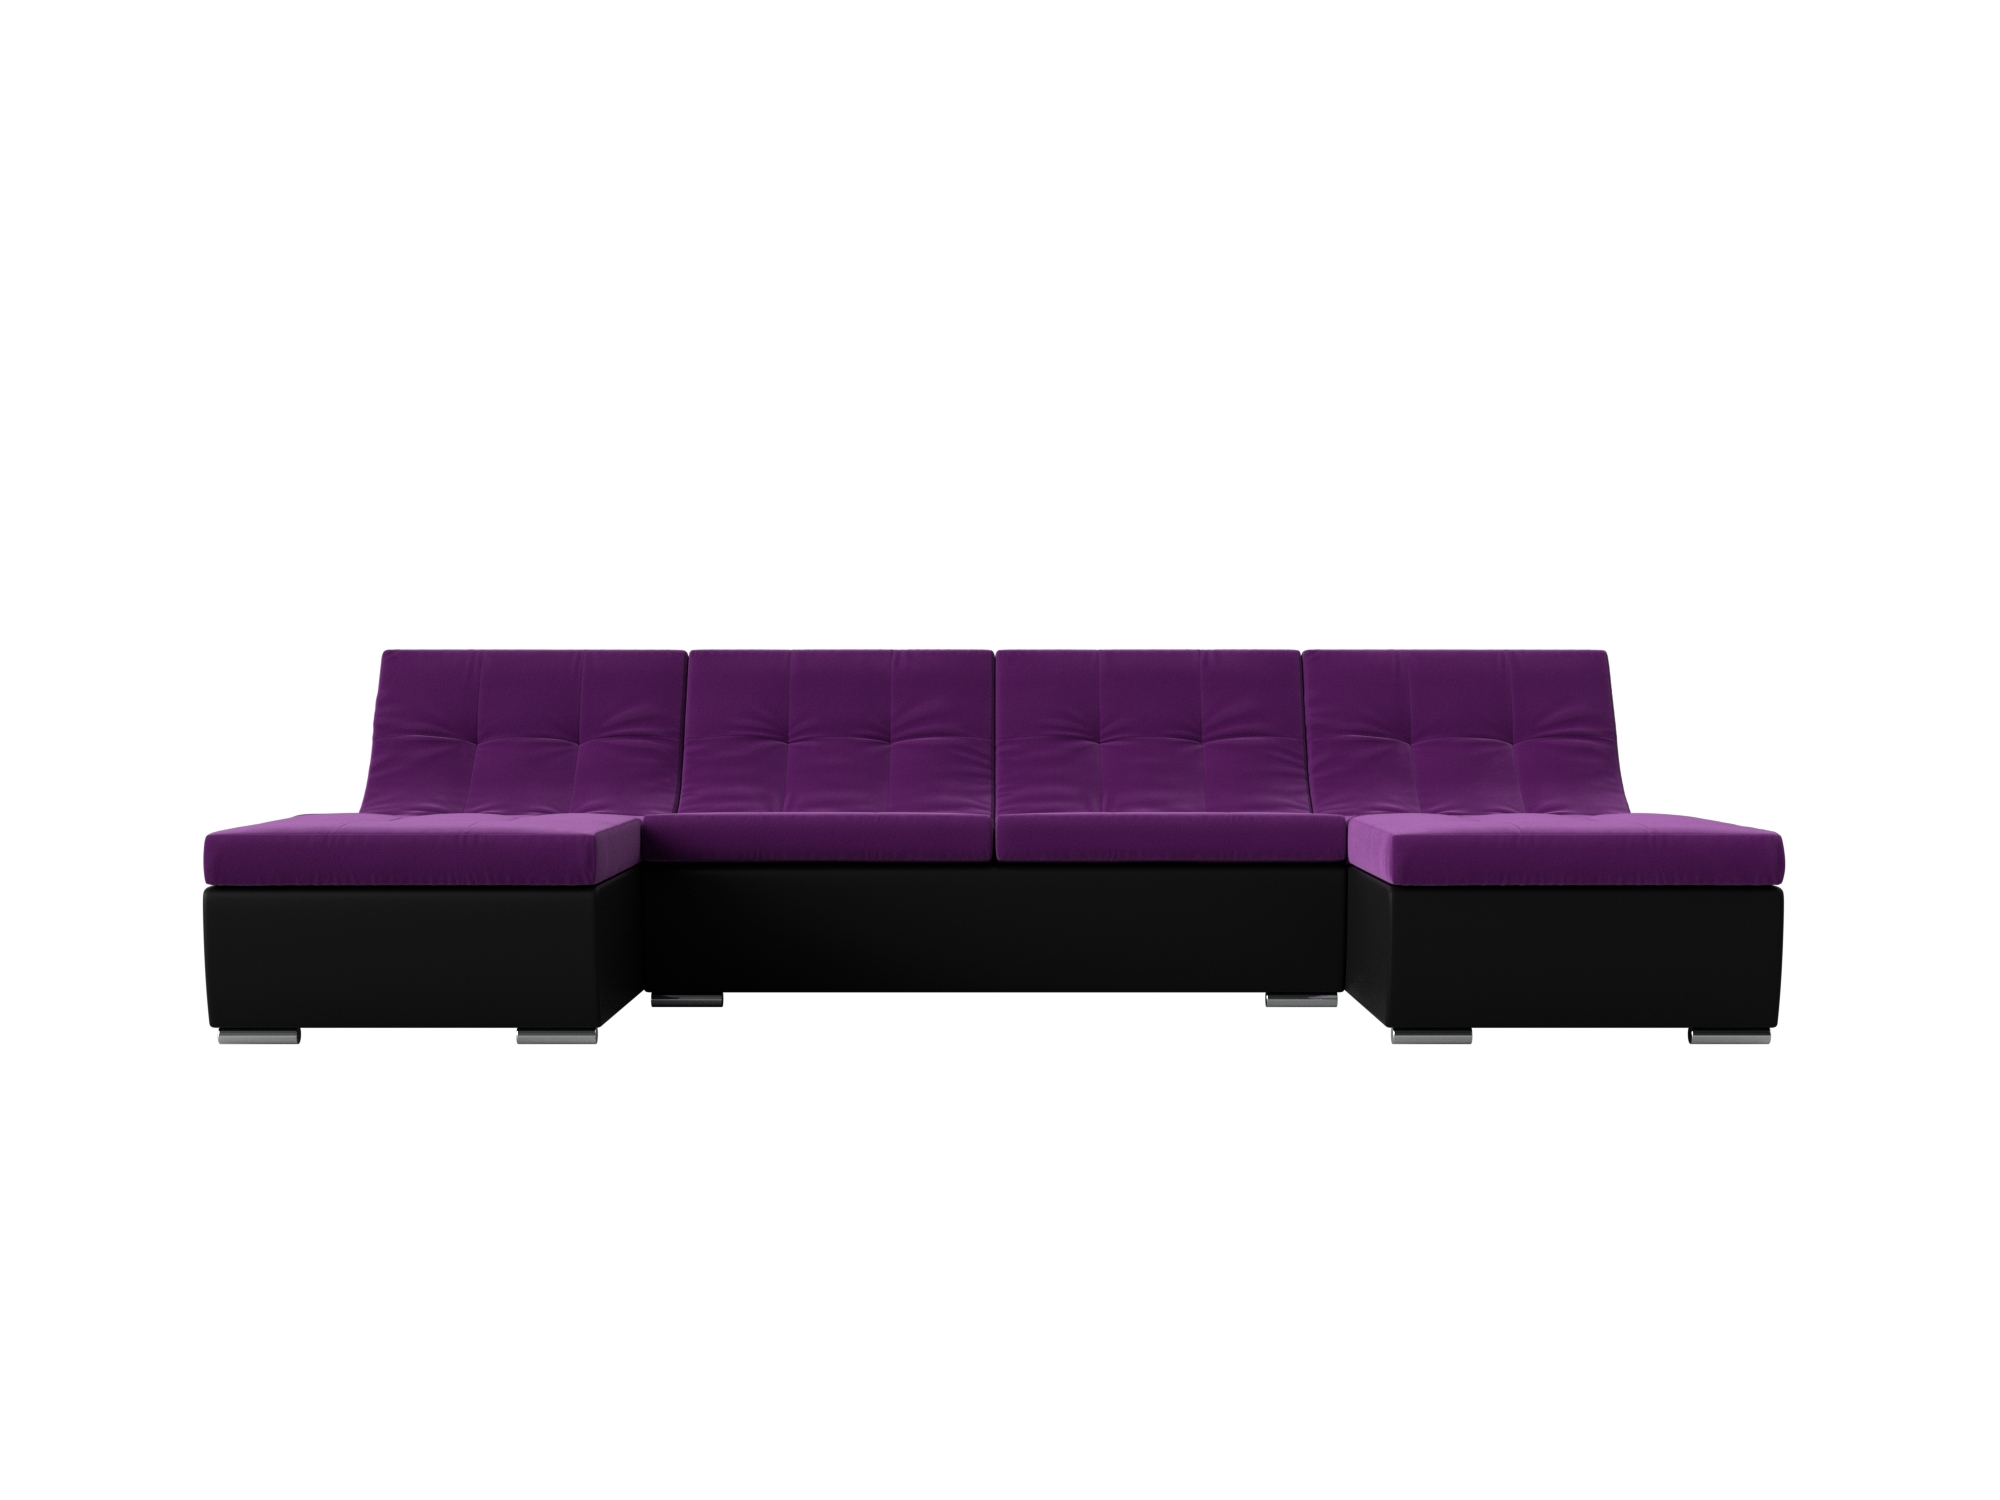 П-образный модульный диван Монреаль MebelVia Фиолетовый, Черный, Микровельвет, Экокожа, ЛДСП п образный модульный диван монреаль mebelvia фиолетовый черный микровельвет экокожа лдсп